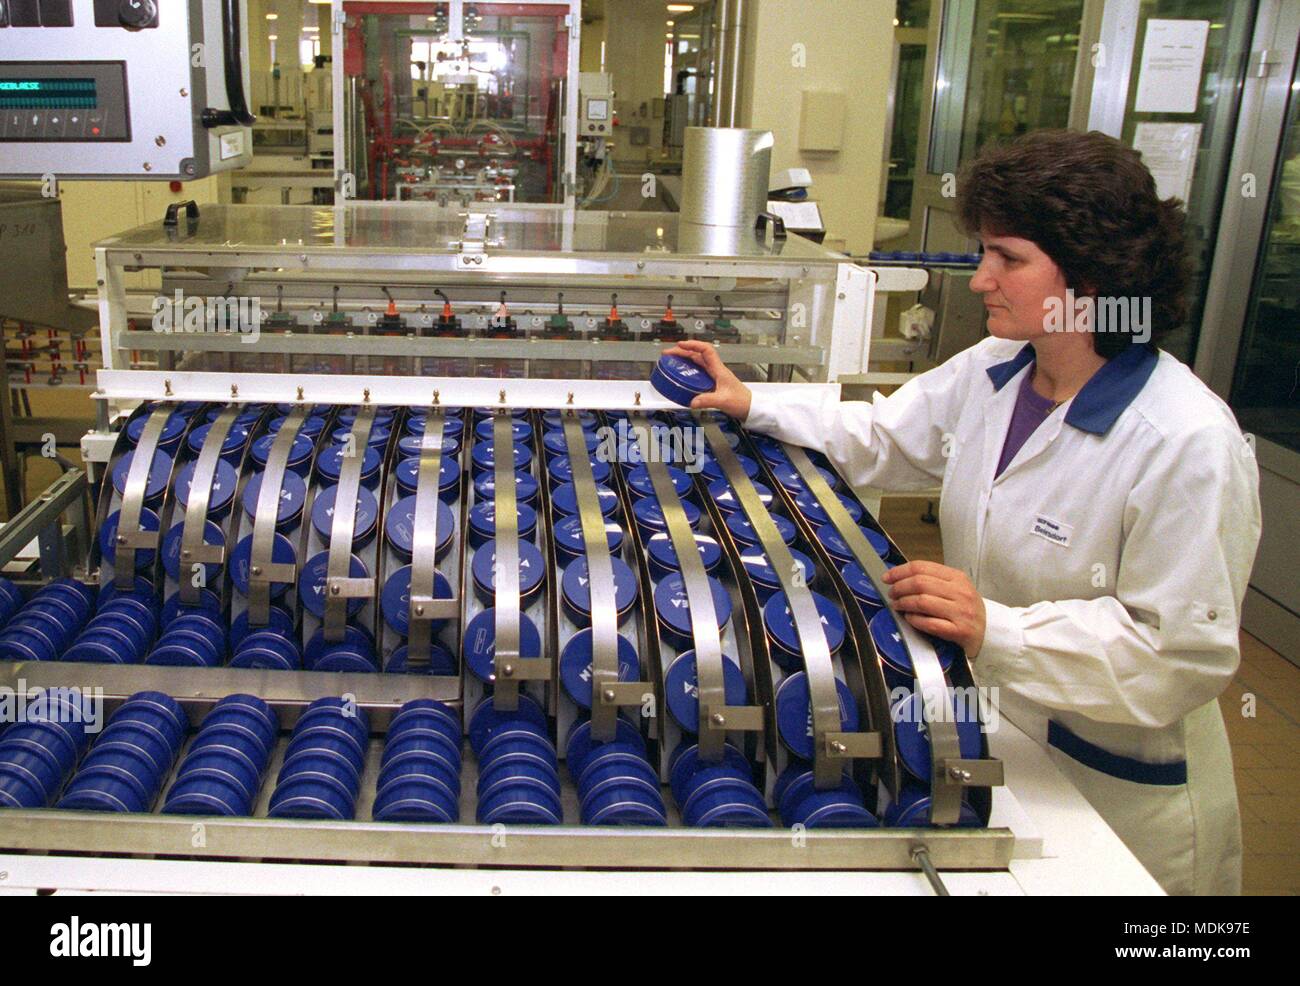 Ein Mitarbeiter der Hamburger Beiersdorf Werk prüft eine Bearbeitungsmaschine mit Nivea Dosen am 21.1.1997. Rund 50 Tonnen des 'creme Classic' werden hier täglich abgefüllt in den blauen Dosen. Rund 11.000 Tonnen die Creme, die fast seit 1911 unverändert produziert worden ist, sind in Hamburg, das ungefähr 60% des weltweiten Füllmenge produziert. Die universelle Creme wird heute in rund 160 Ländern auf der ganzen Welt zur Verfügung. Der Name des Erfinders, der Apotheker Oscar Troplowitz, wurde aus dem Namen abgeleitet, weil die Farbe von dem lateinischen Wort für Schnee weiß, niveus. | Verwendung weltweit Stockfoto